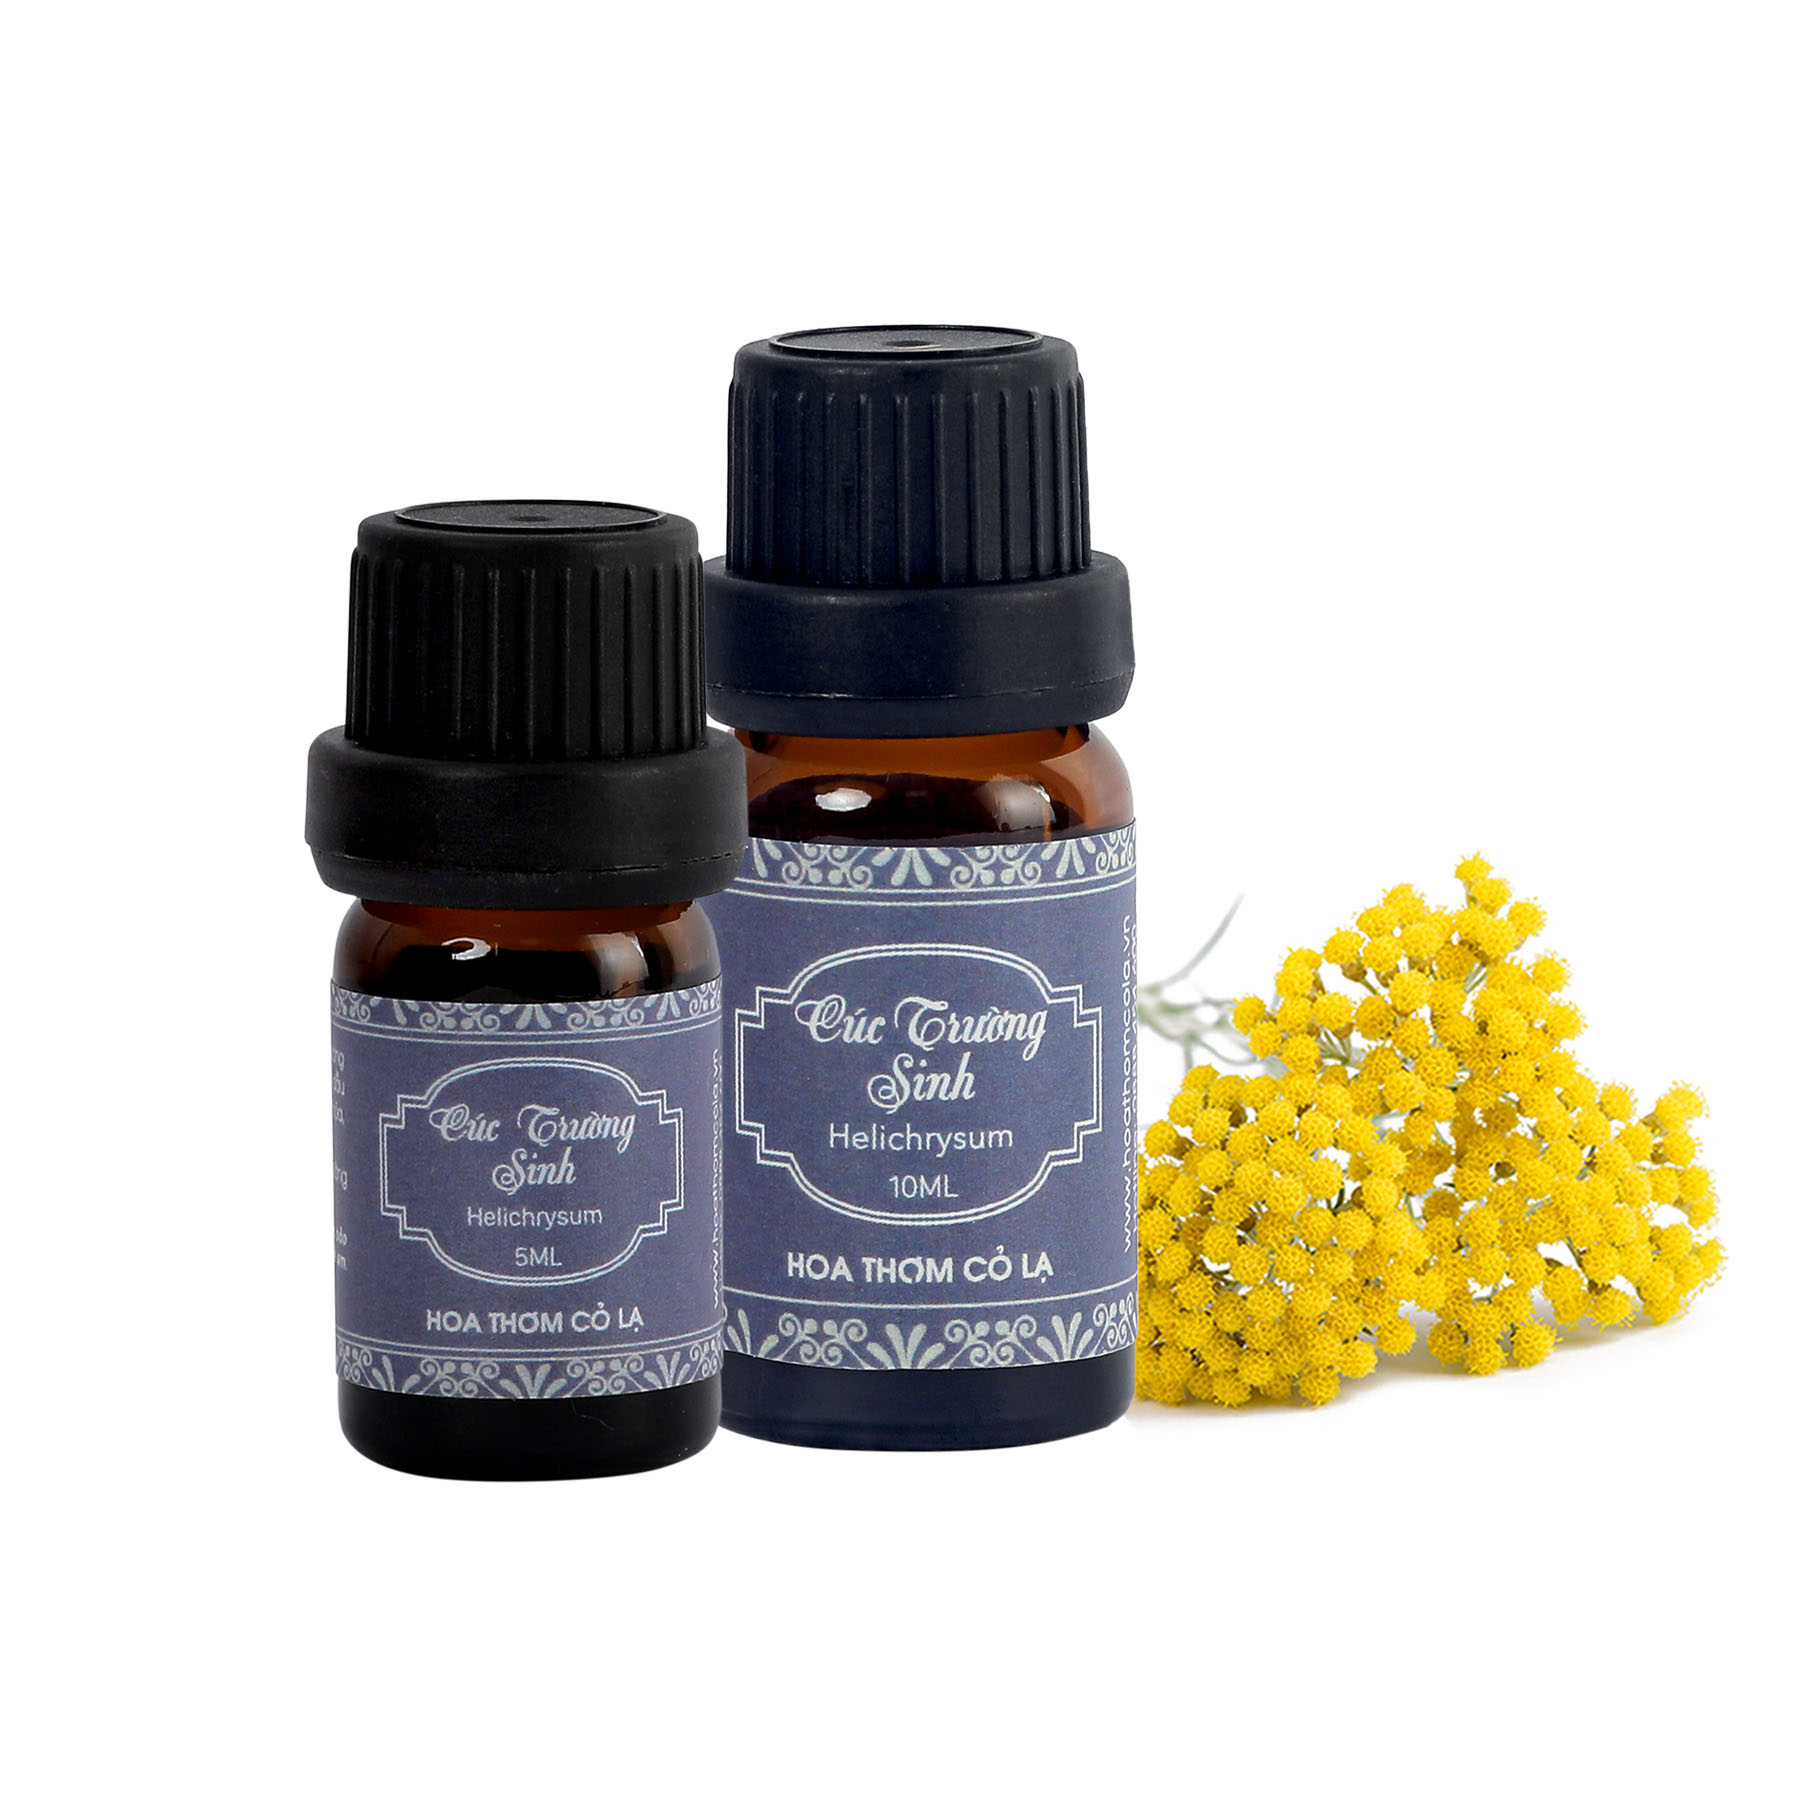 Tinh Dầu Cúc Trường Sinh - Helichrysum Essential Oil 5ml - Hoa Thơm Cỏ Lạ